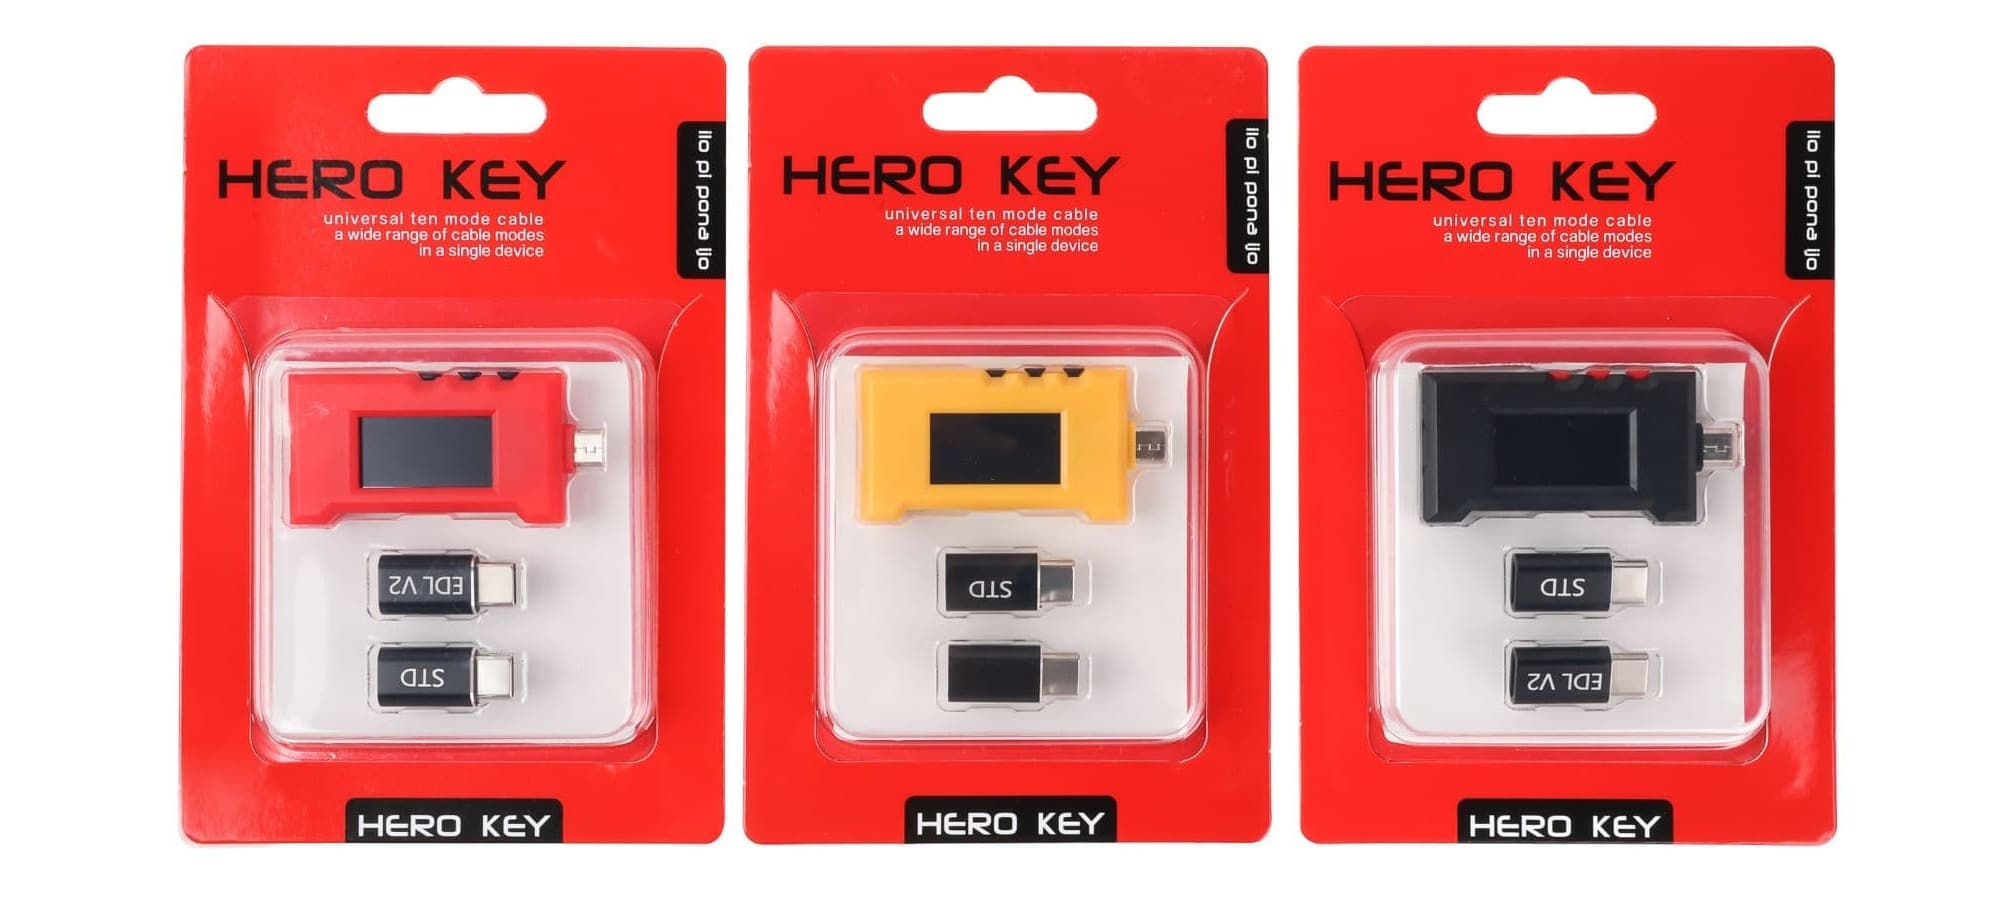 Кабель Hero-Key наявний в різних кольорах